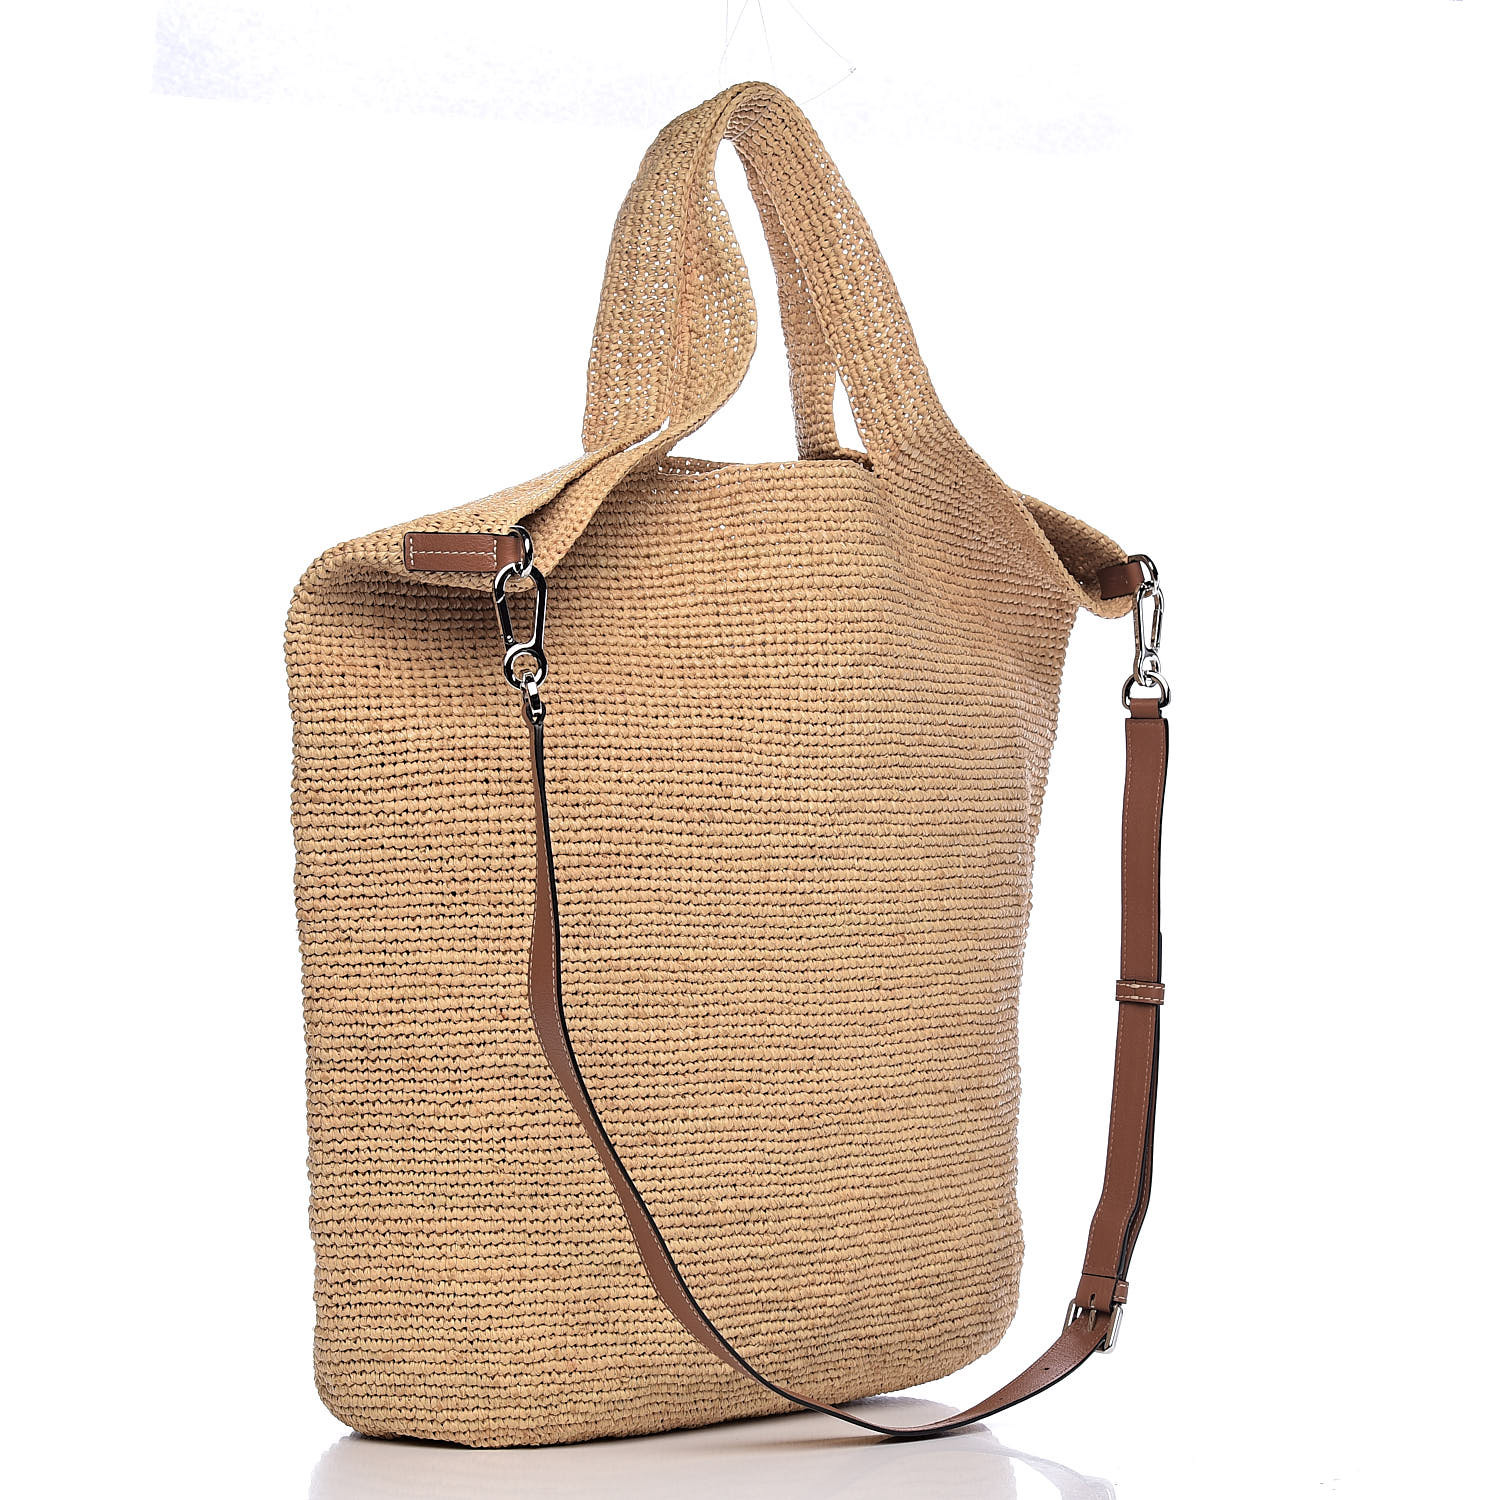 LOEWE Raffia Large Tote Bag Natural Tan 502403